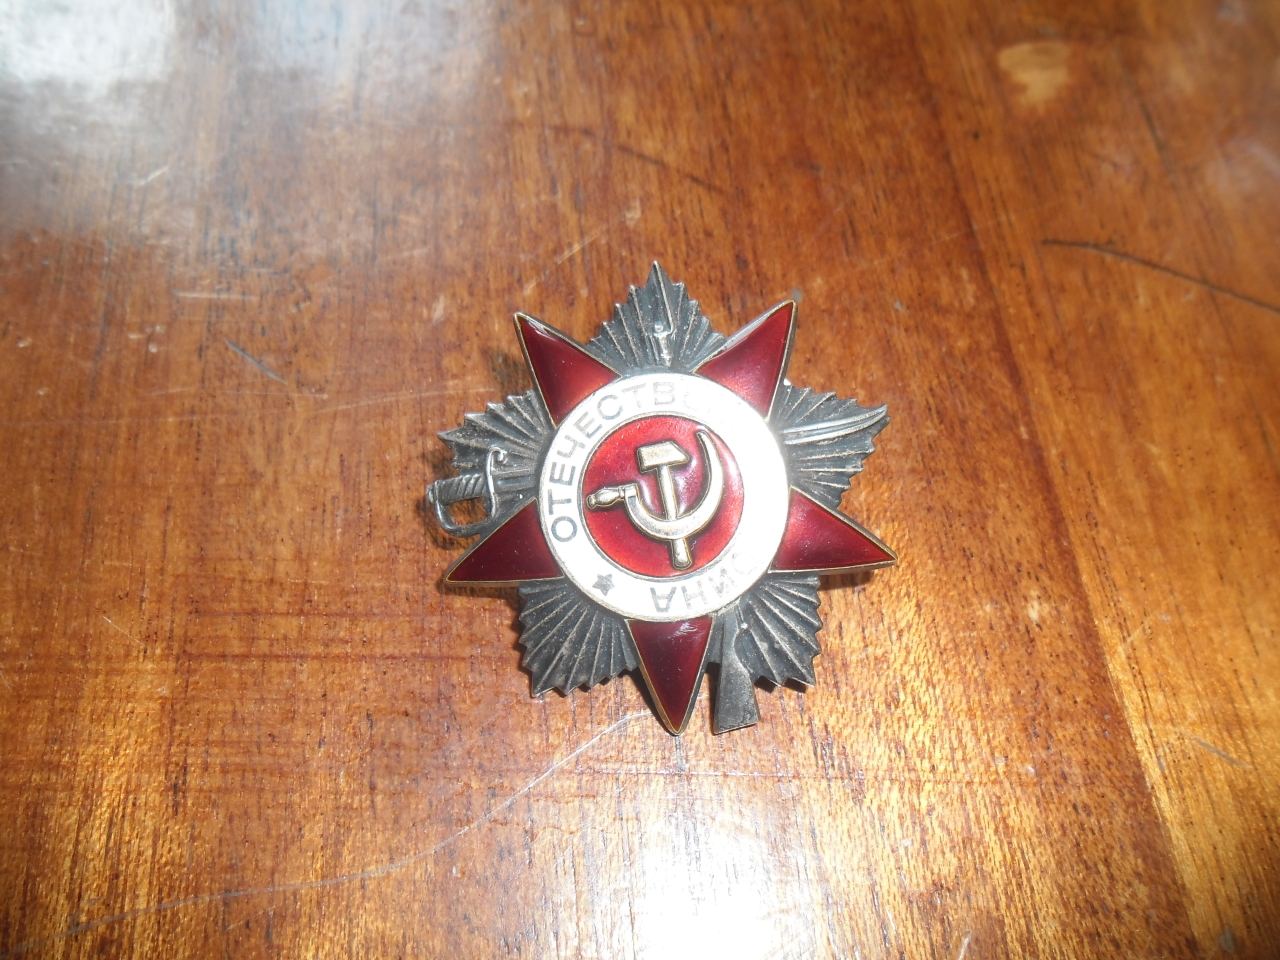  Շքանշան՝  Հովհաննես Հայրապետի Պիպոյանի (Հայրենական պատերազմի մասնակից)